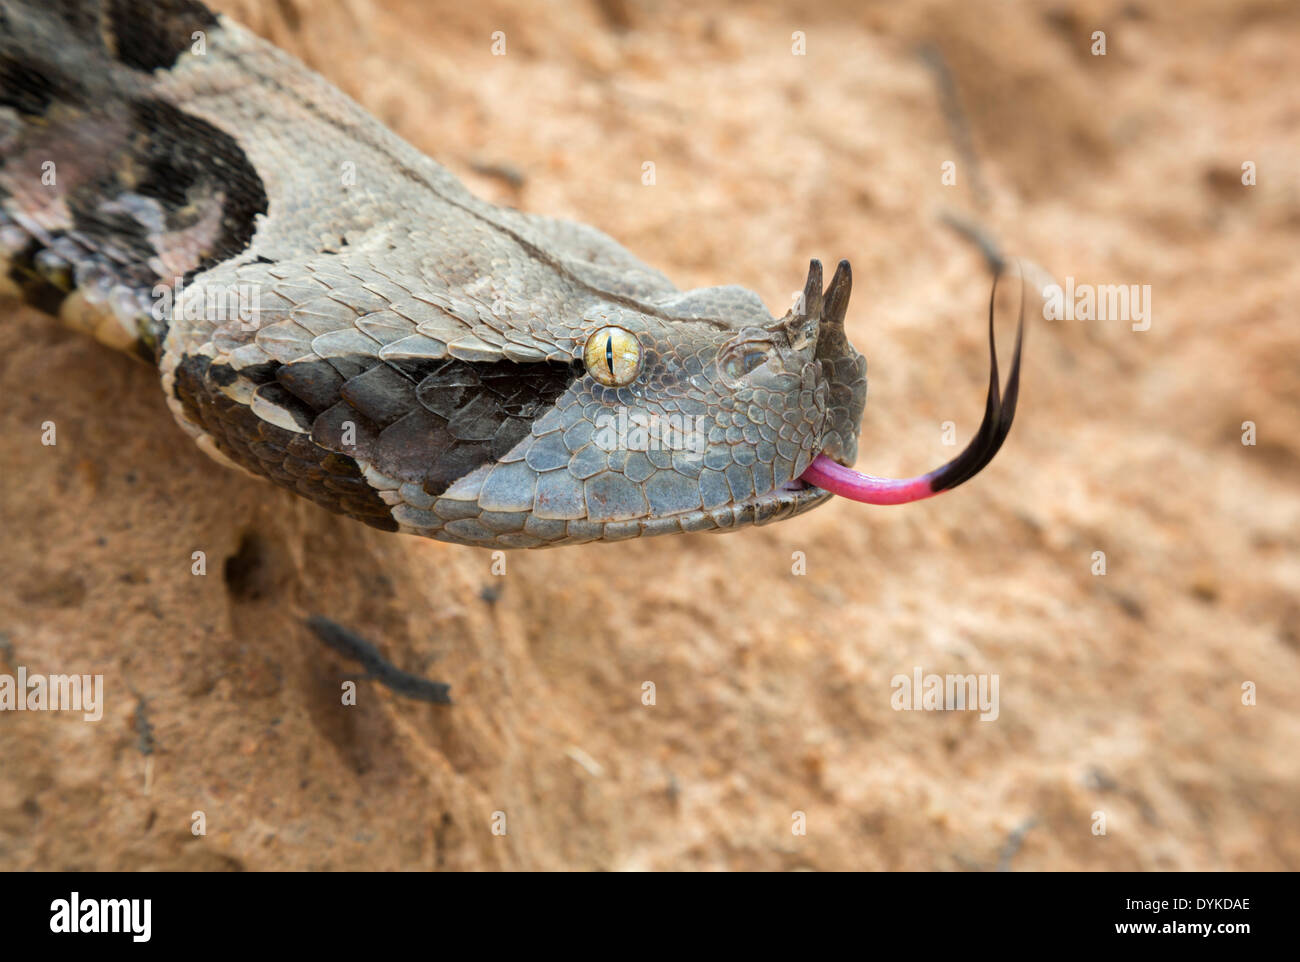 Ritratto di Gaboon viper (Bitis rhinoceros) dell'Africa occidentale, Ghana. Foto Stock